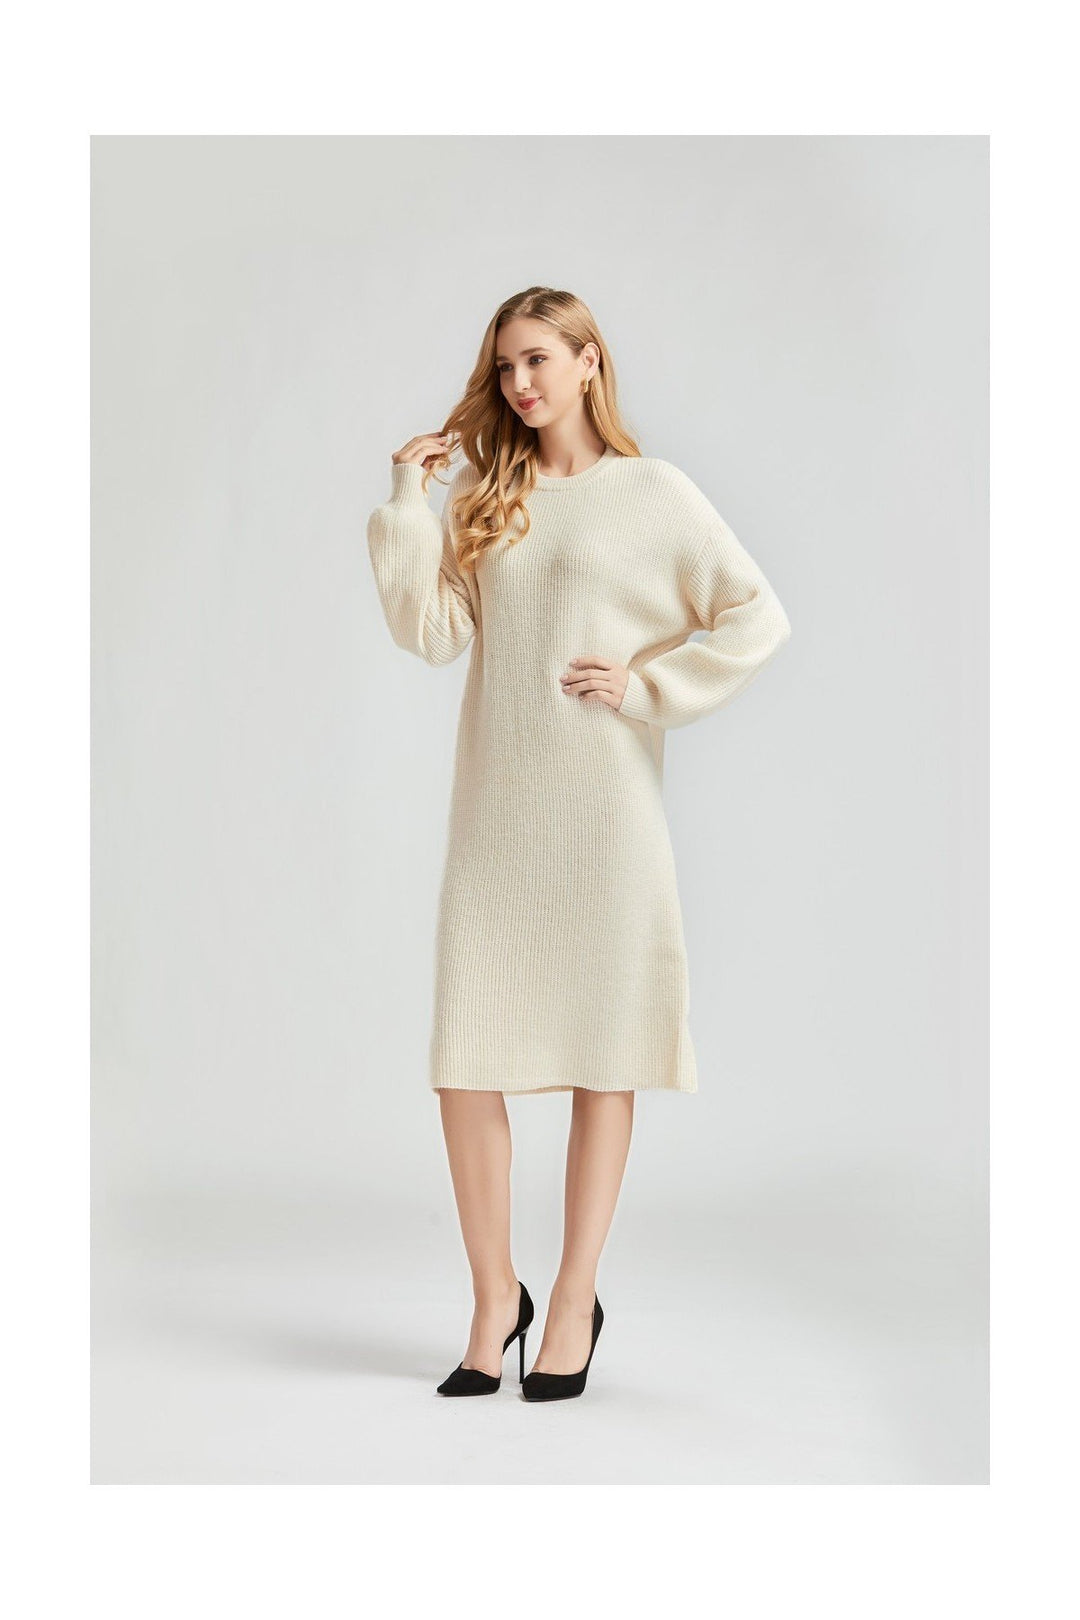 Beige Long Sleeve Sweater Midi Dress - Side View